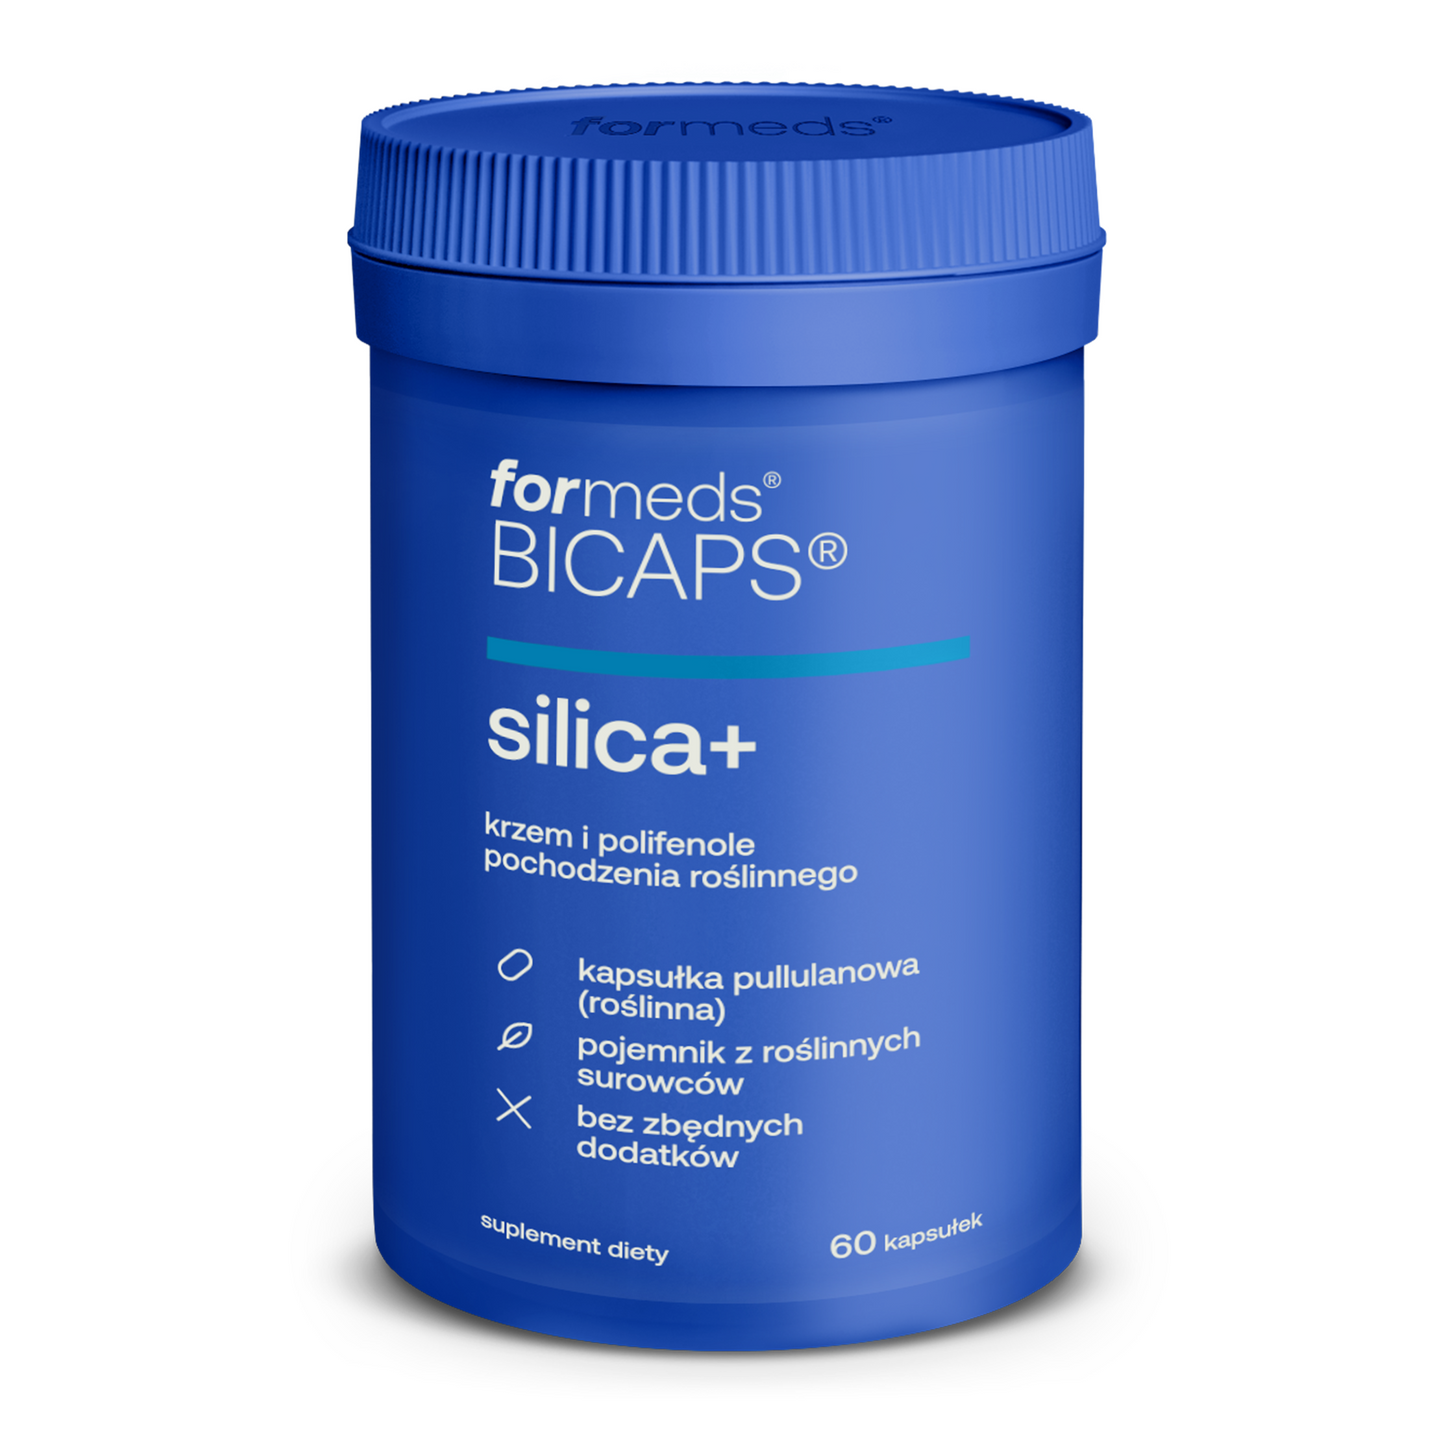 BICAPS Silica+ - krzem organiczny kapsułki, tabletki na włosy